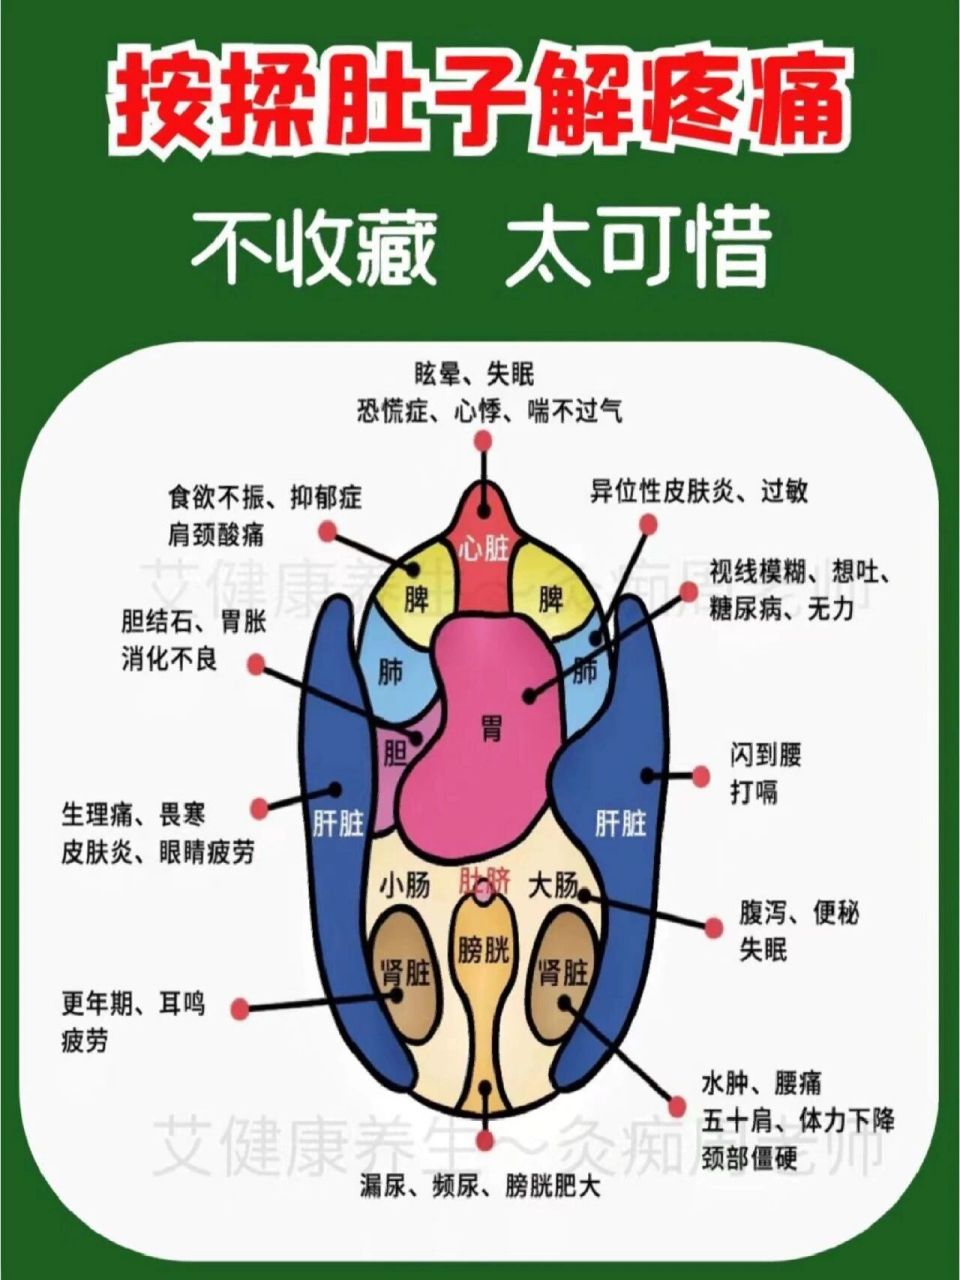 肚脐的位置在三焦经上,中医将人体躯干部的胸腔和腹腔归于三焦,并分为